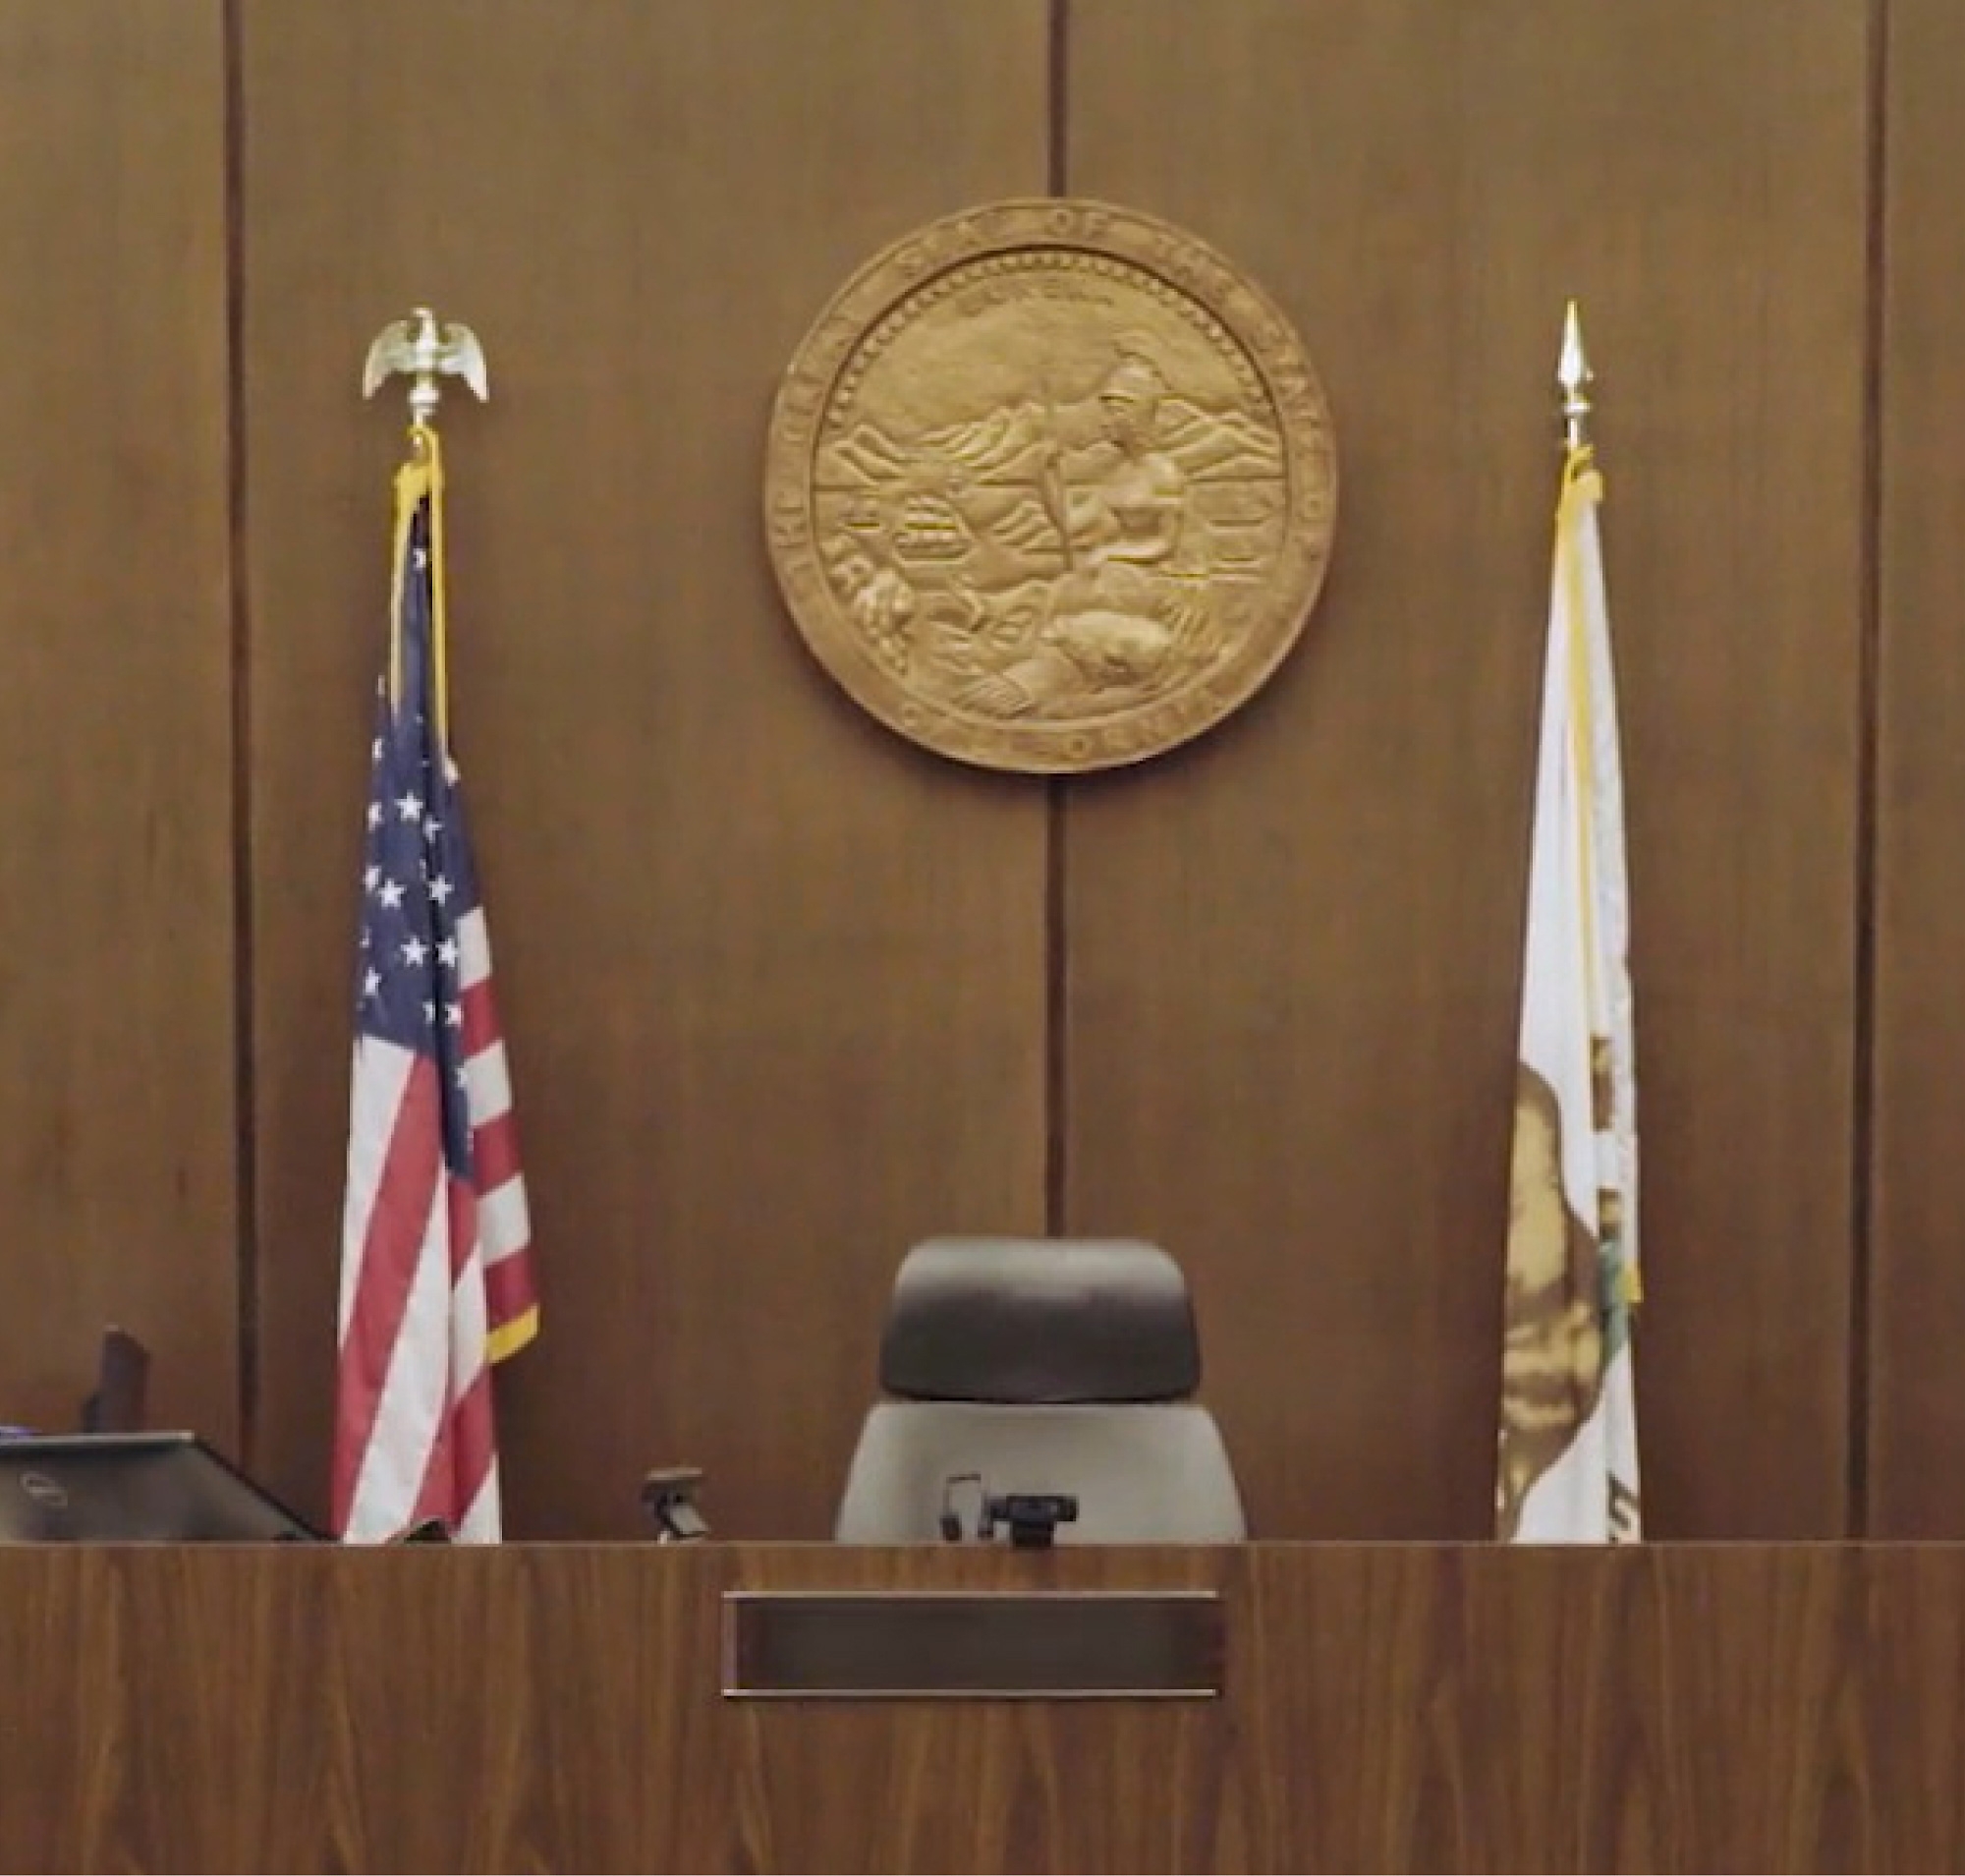 Пусте крісло судді в залі суду з гербом на стіні в оточенні прапорів США та штату.